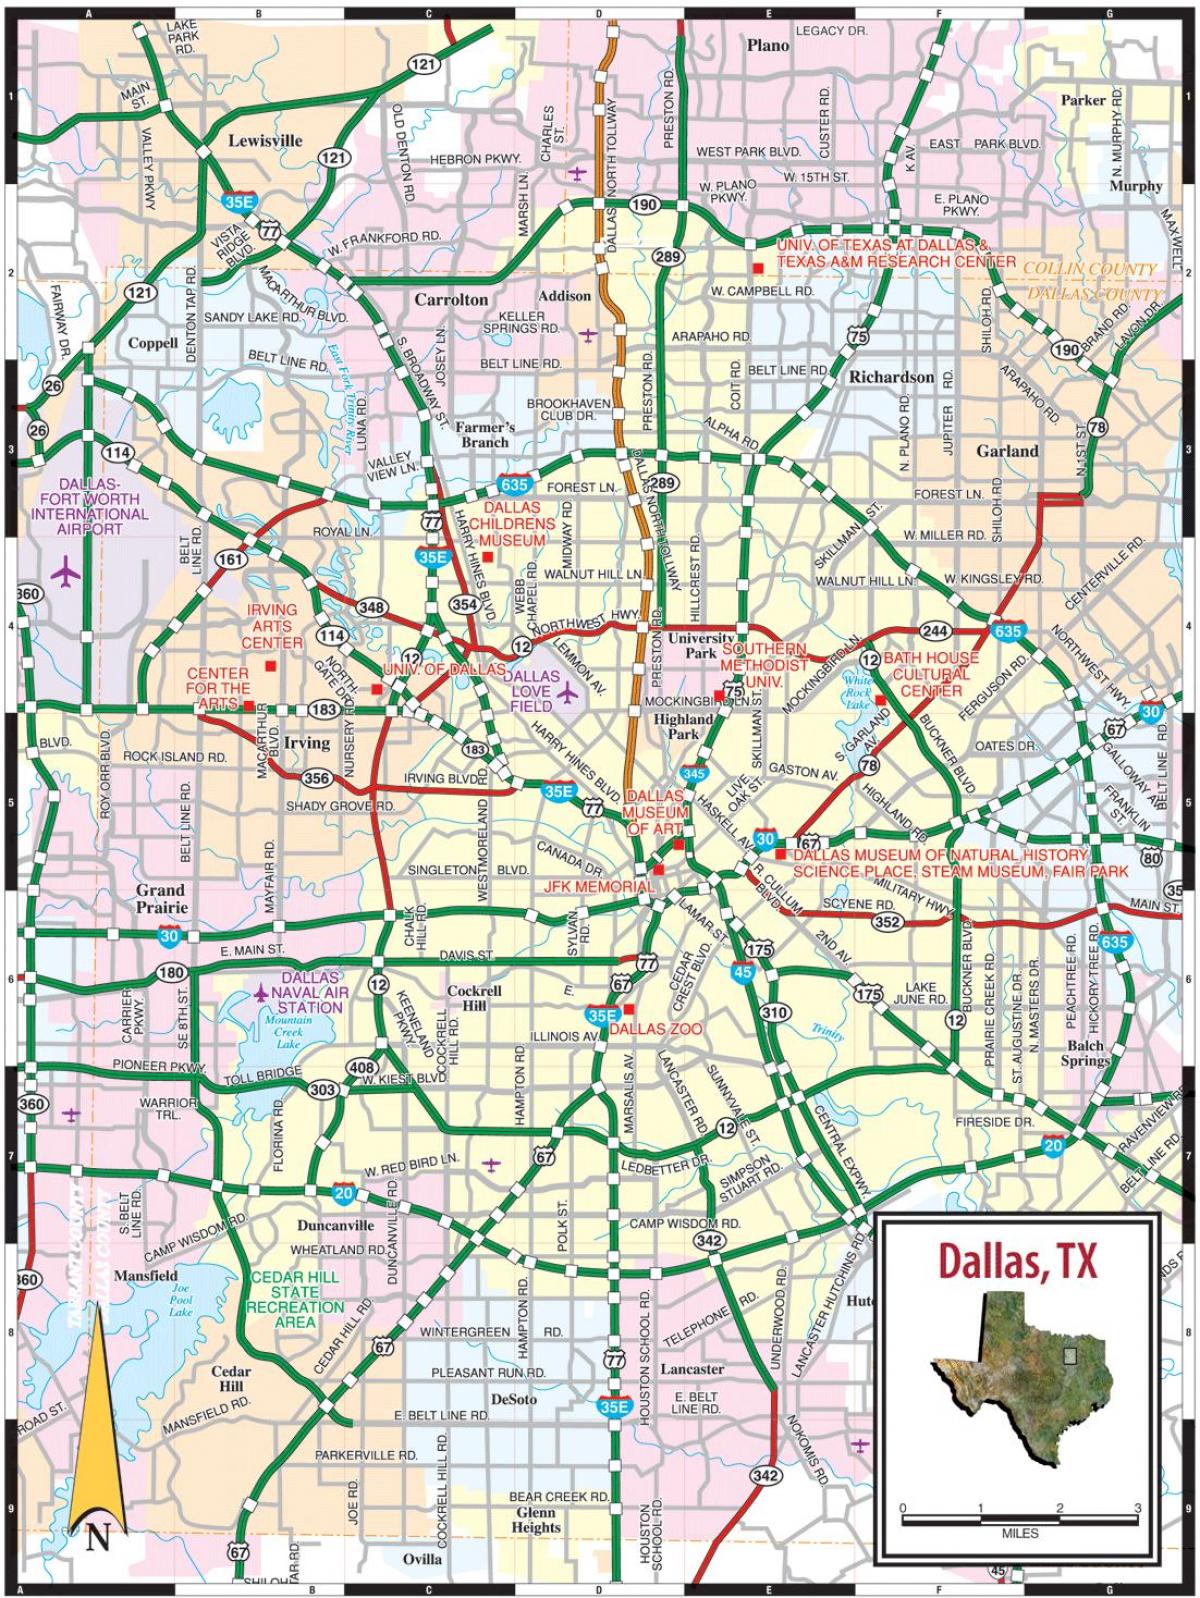 kort over Dallas tx